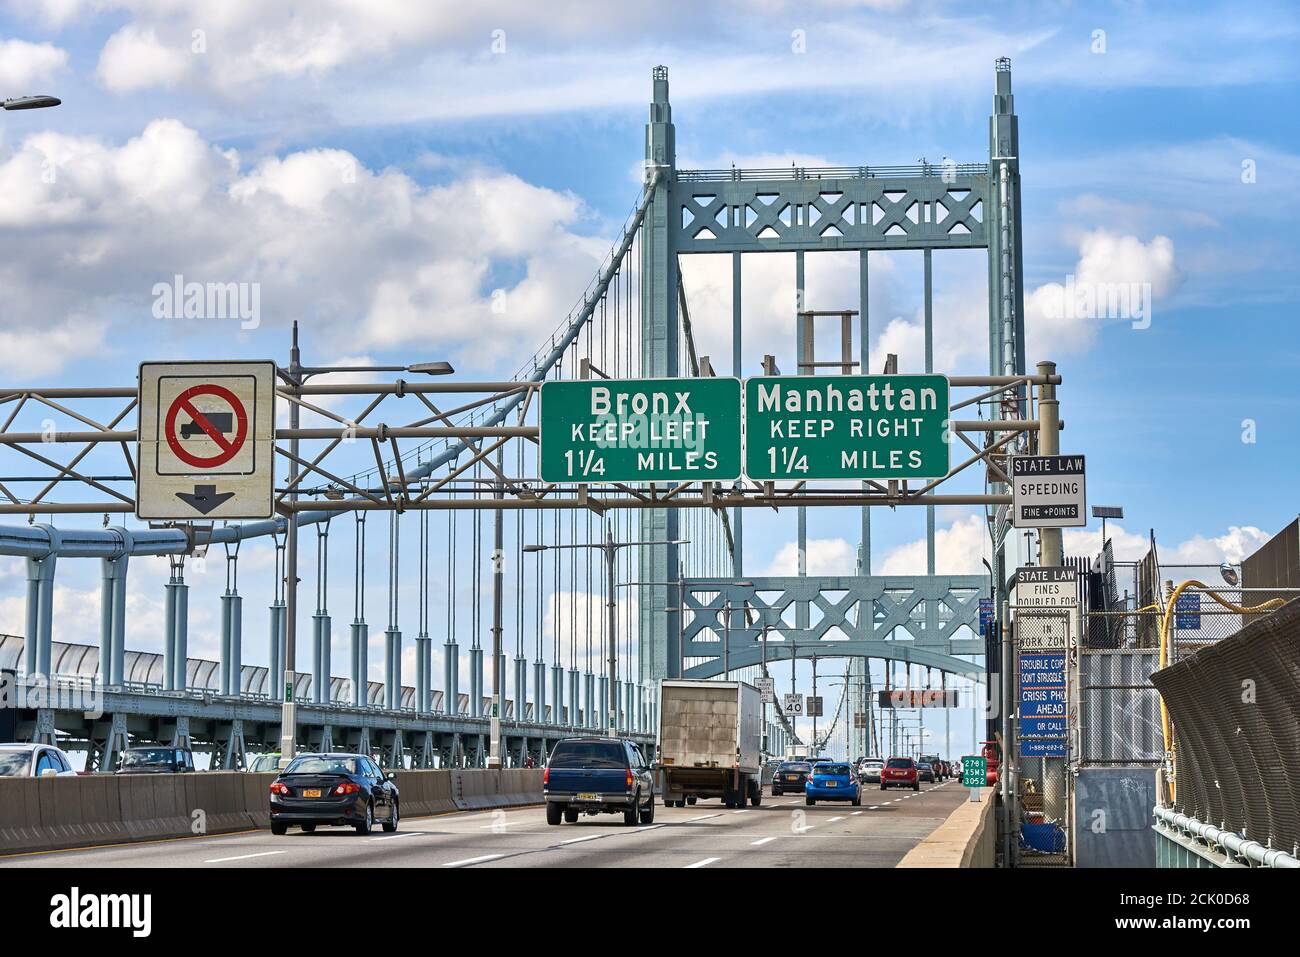 Autos y camiones cruzando el puente Robert F Kennedy, con señales para salidas al Bronx y Manhattan. Foto de stock